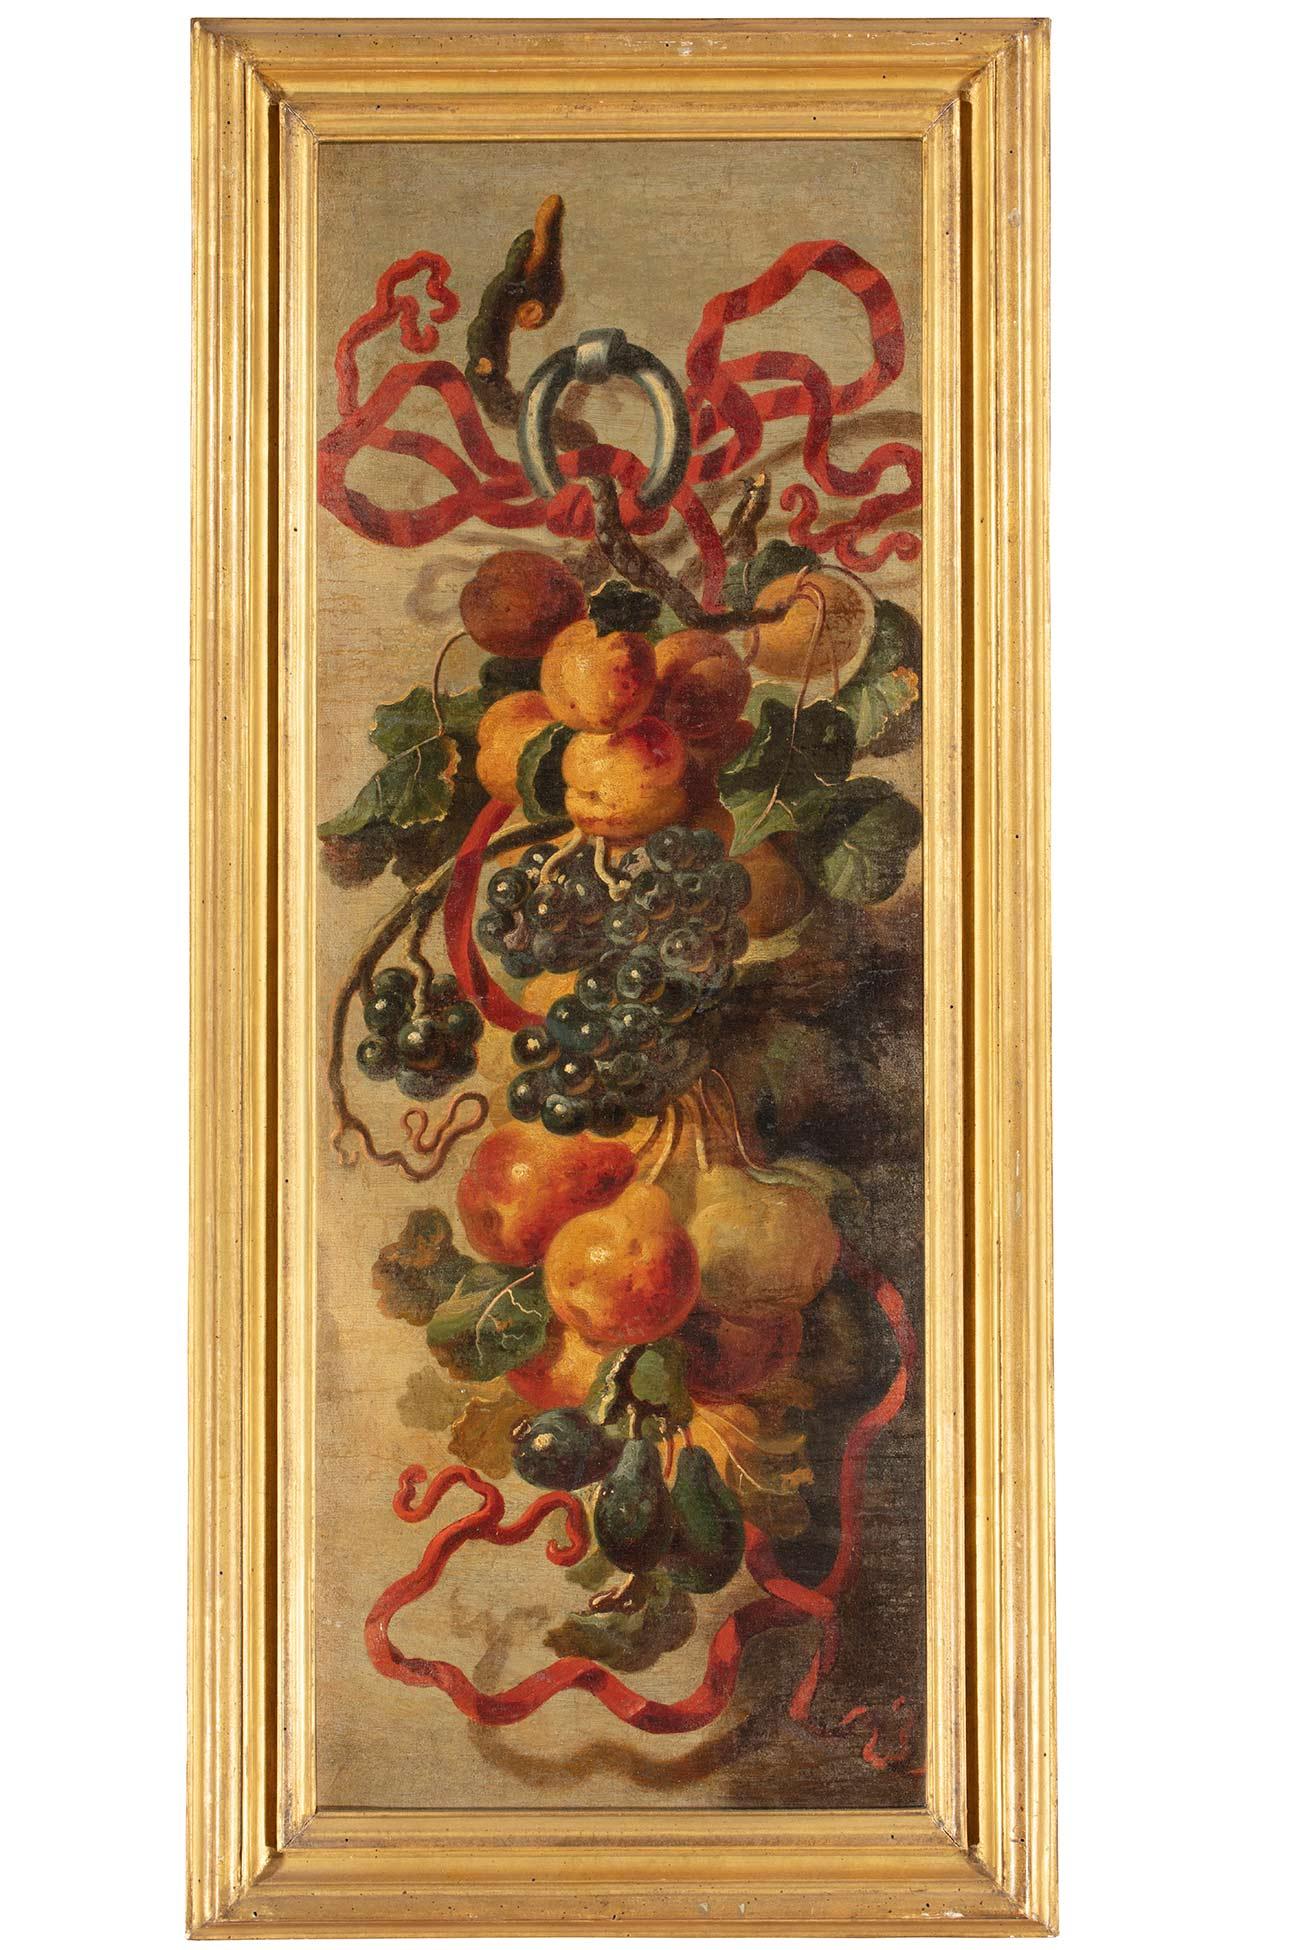 Stillleben aus dem 17. Jahrhundert von Giovanni Paolo Castelli, Öl auf Leinwand